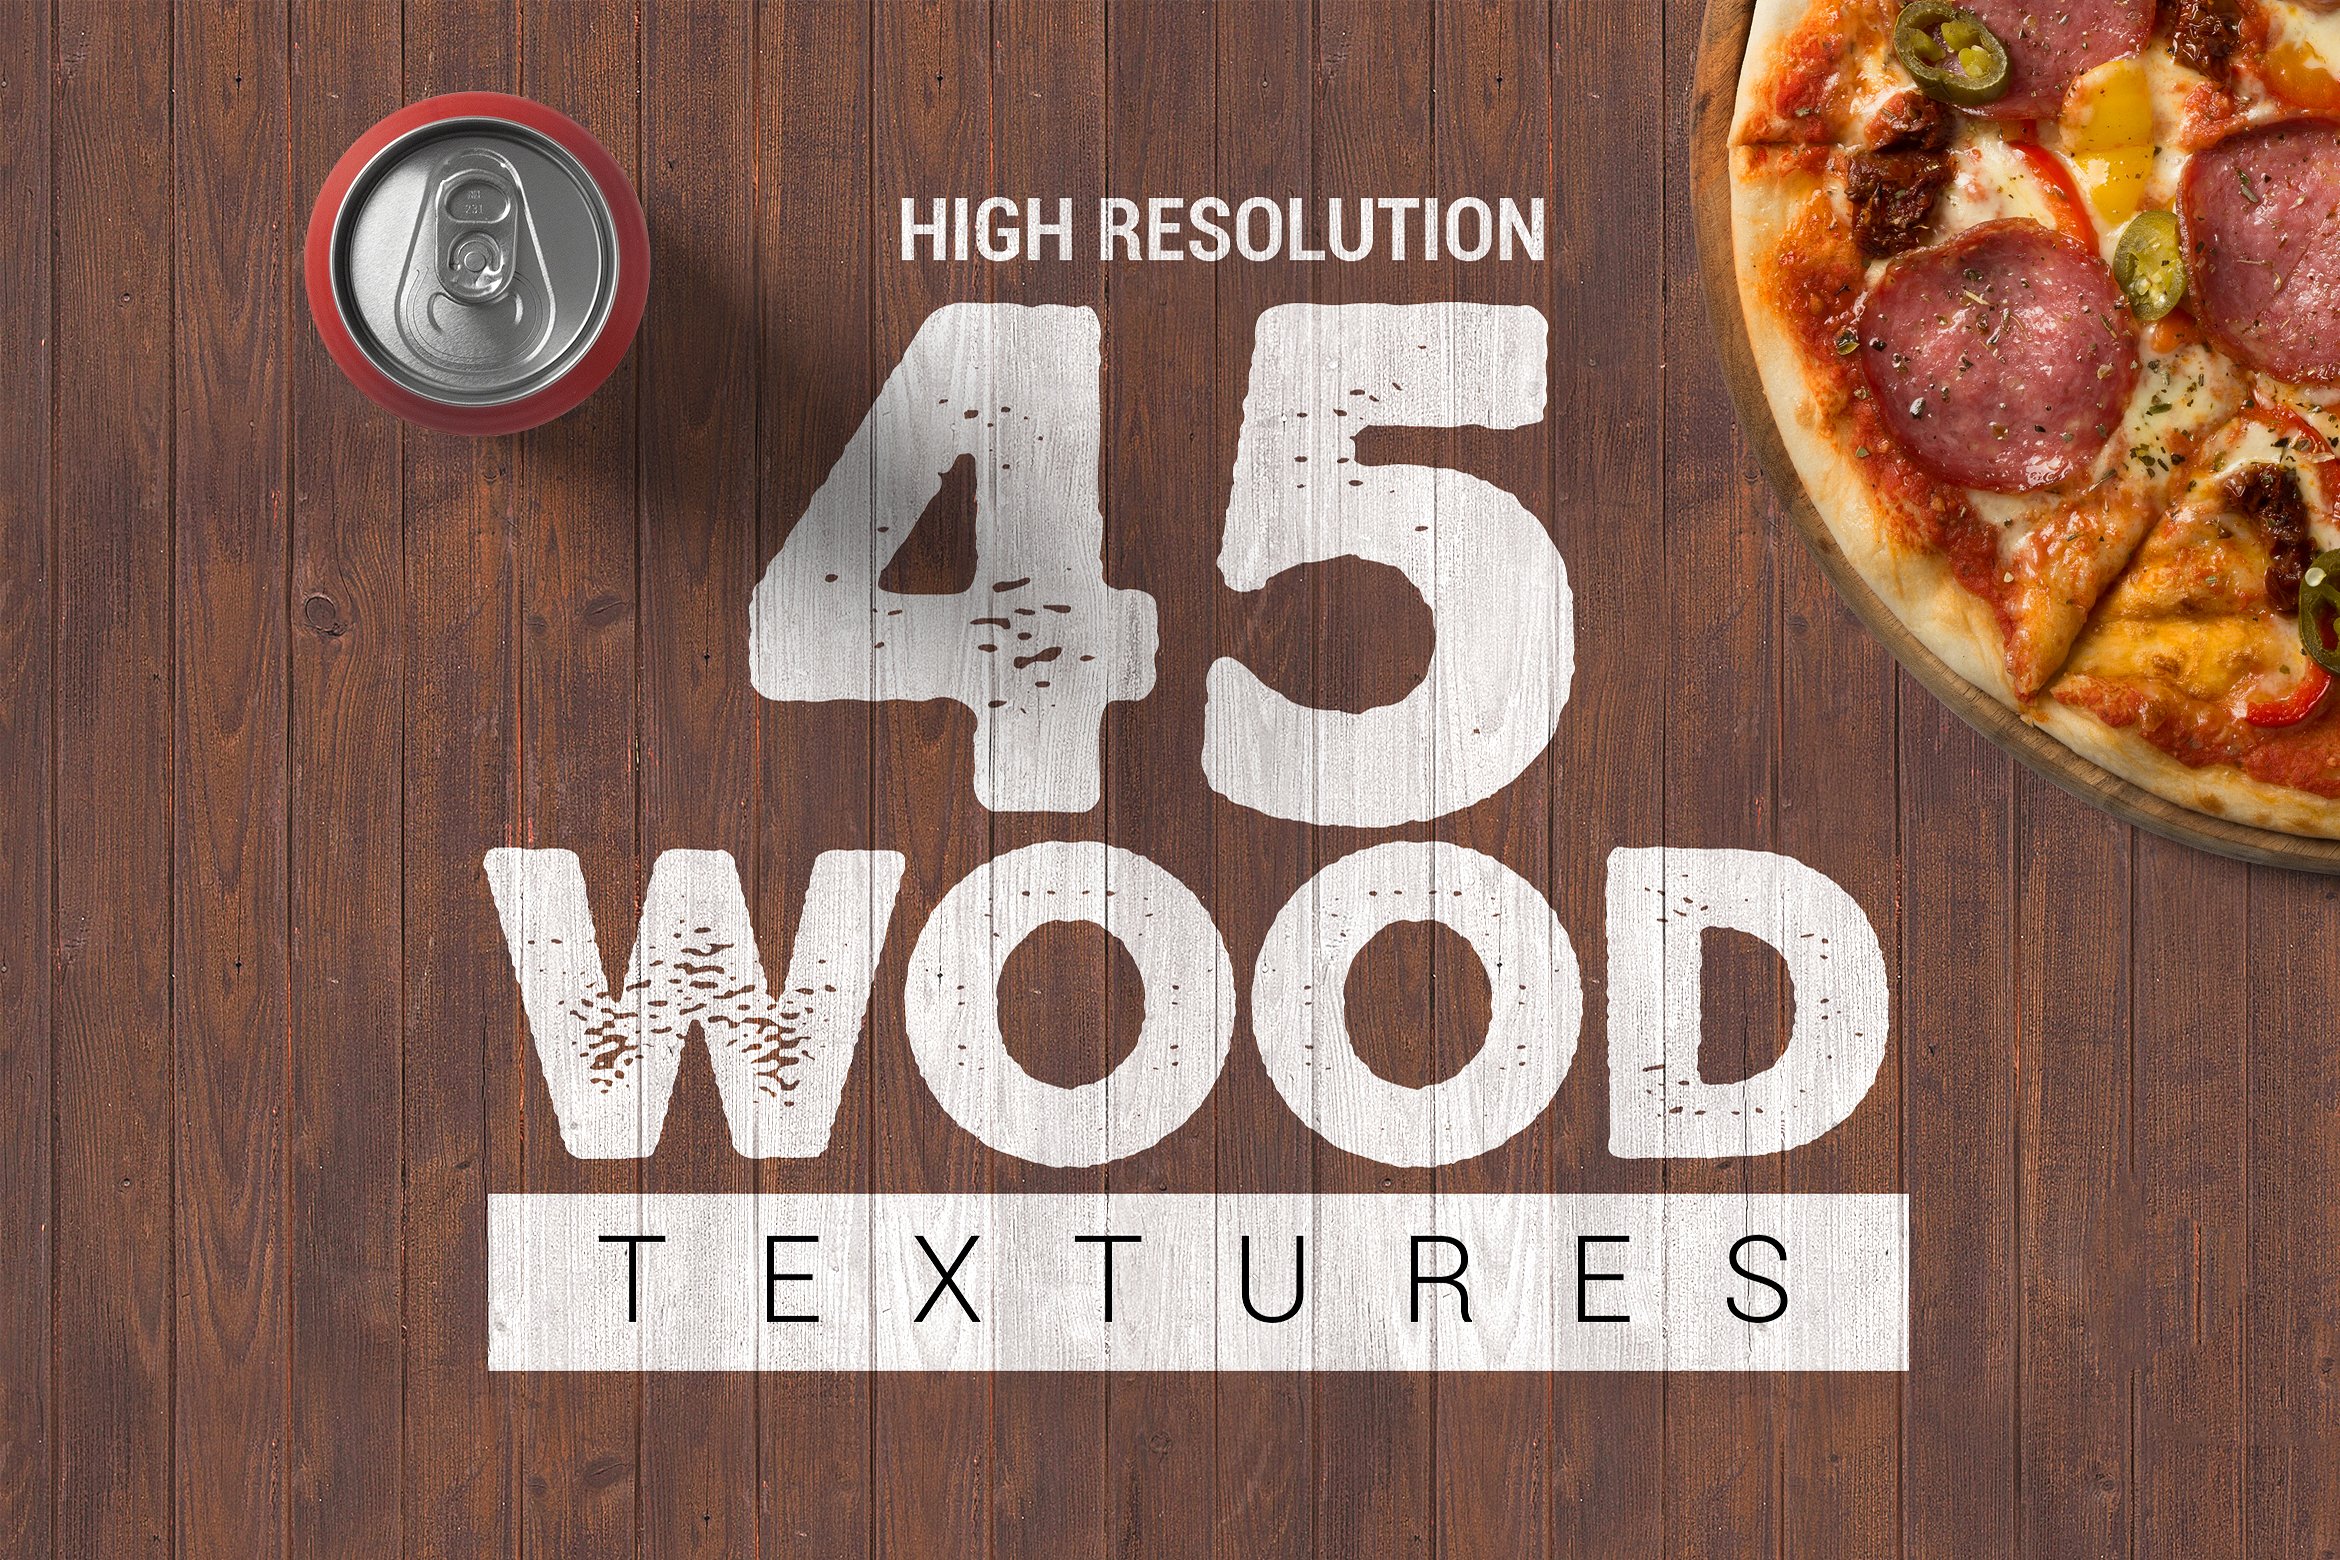 45张高分辨率专业摄影照片木质纹理 45 High Resolution Professional Photography Photos Wooden Texture插图